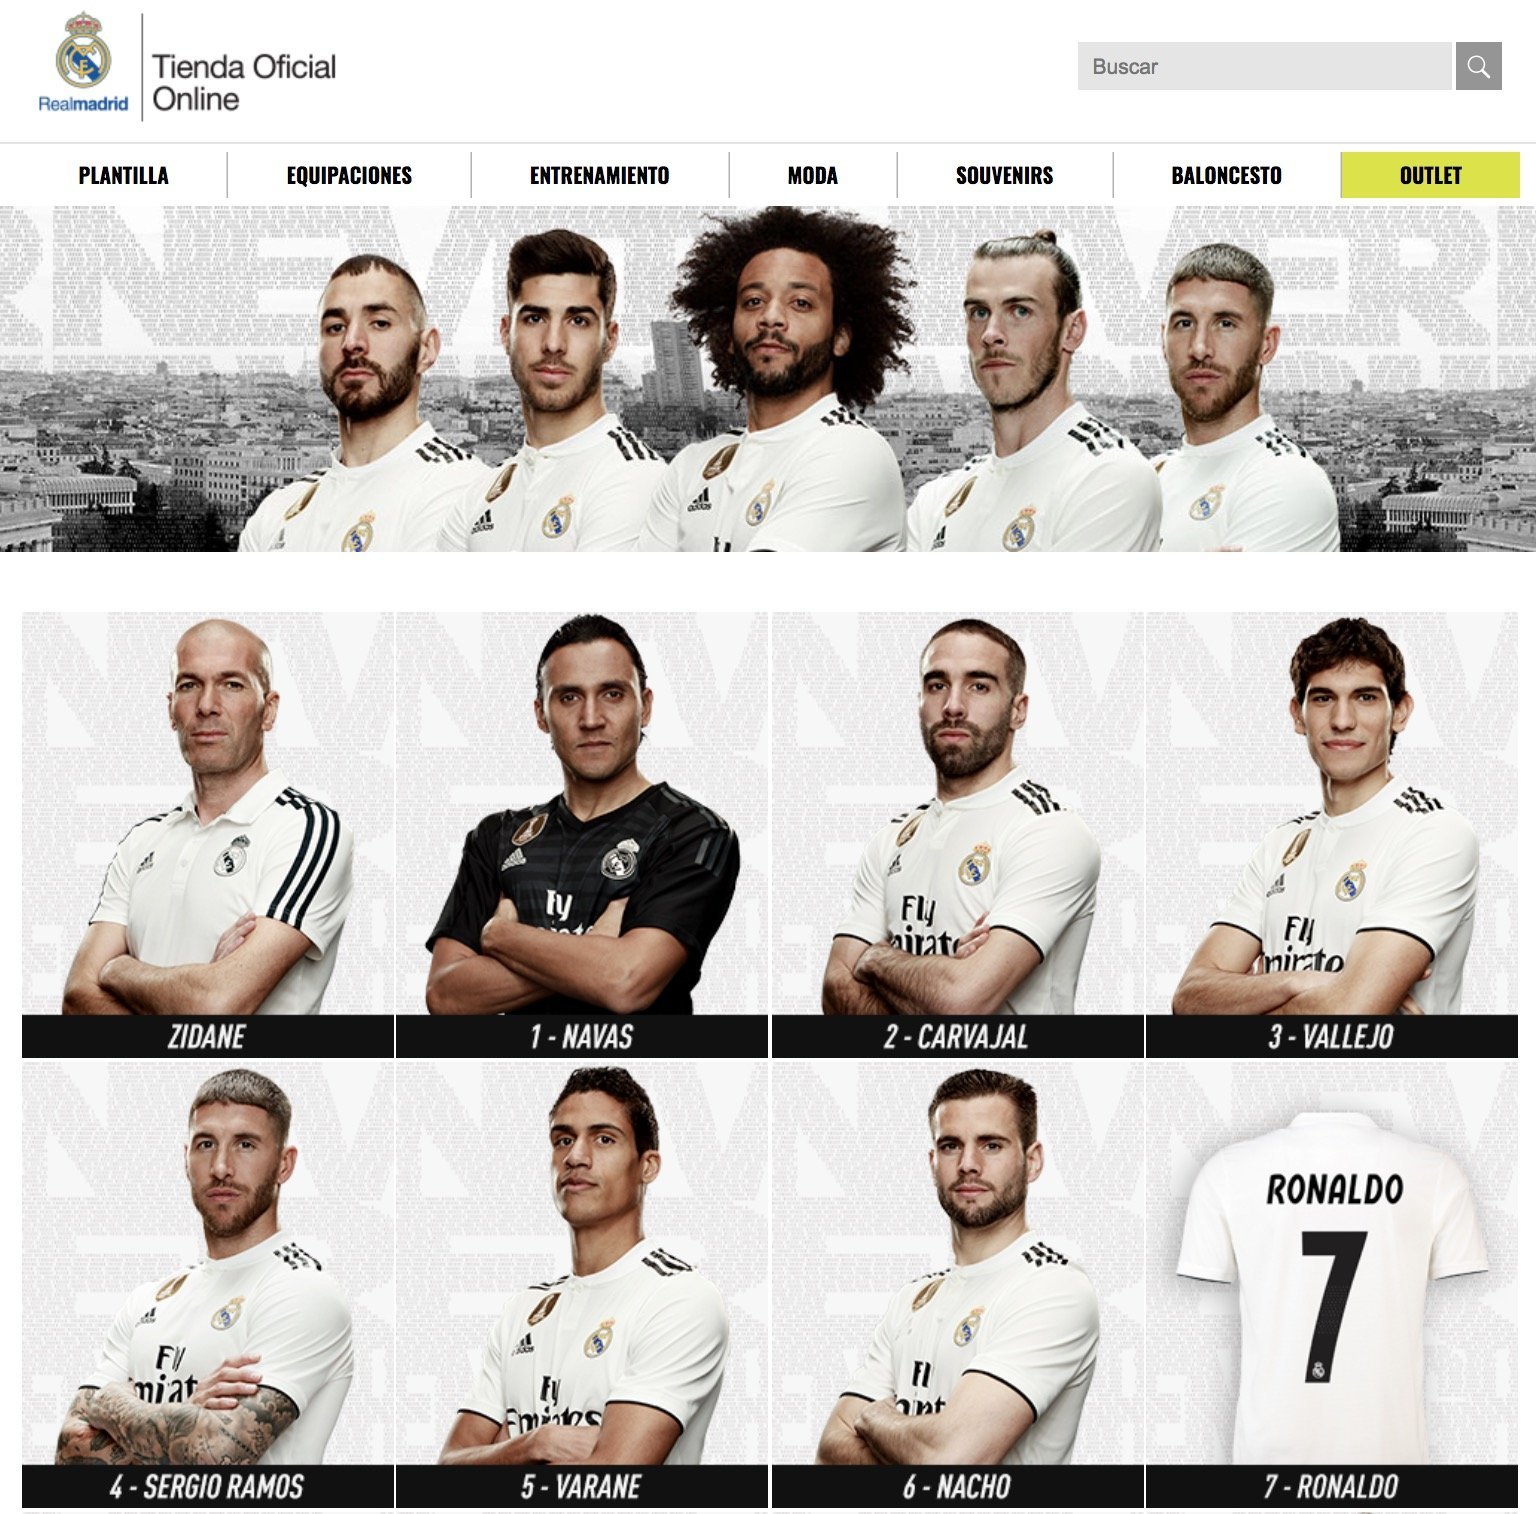 Cristiano Ronaldo no aparece en la tienda oficial del Real Madrid